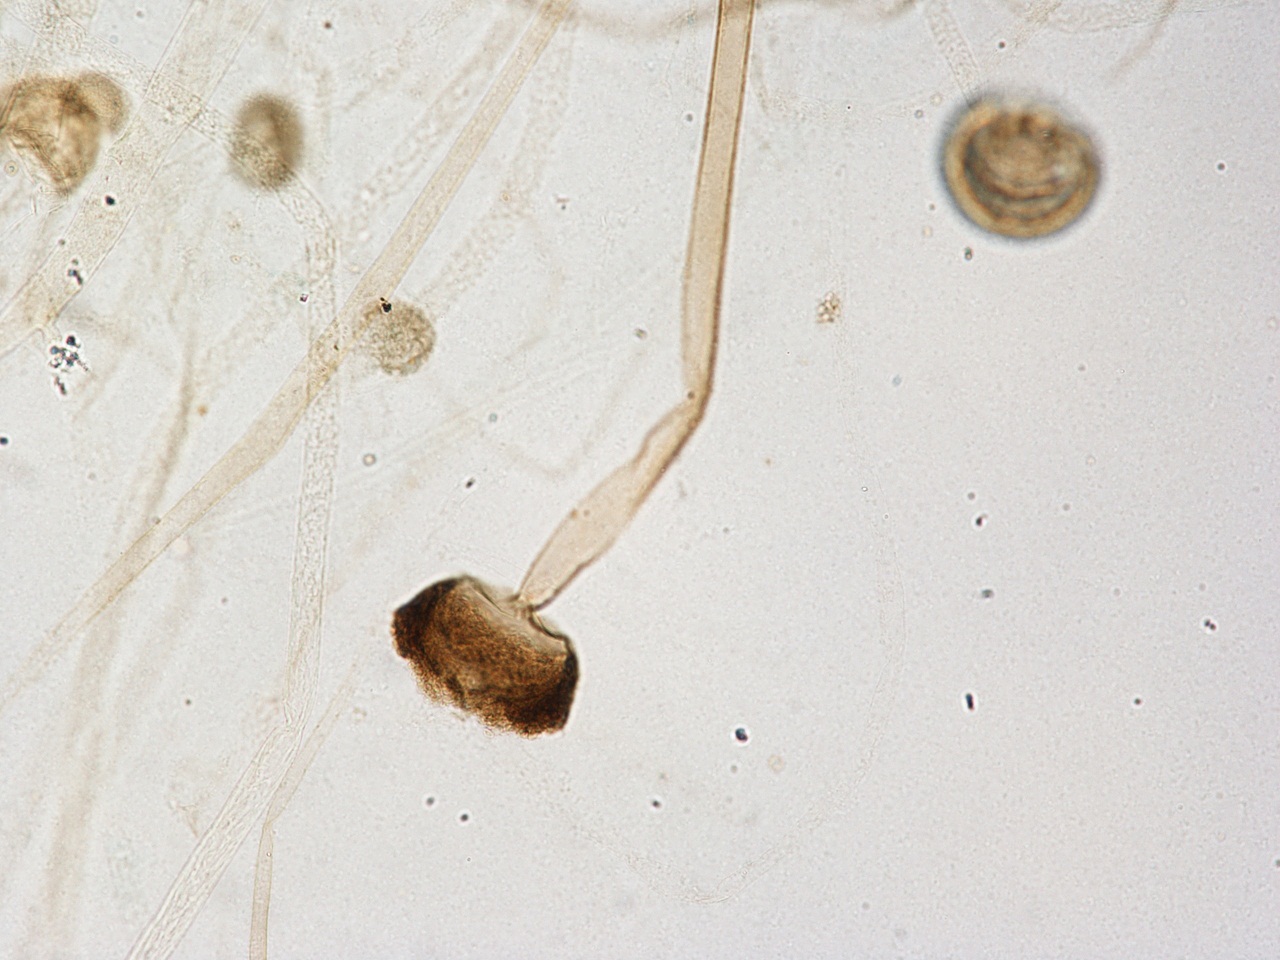 游动孢子囊图片图片